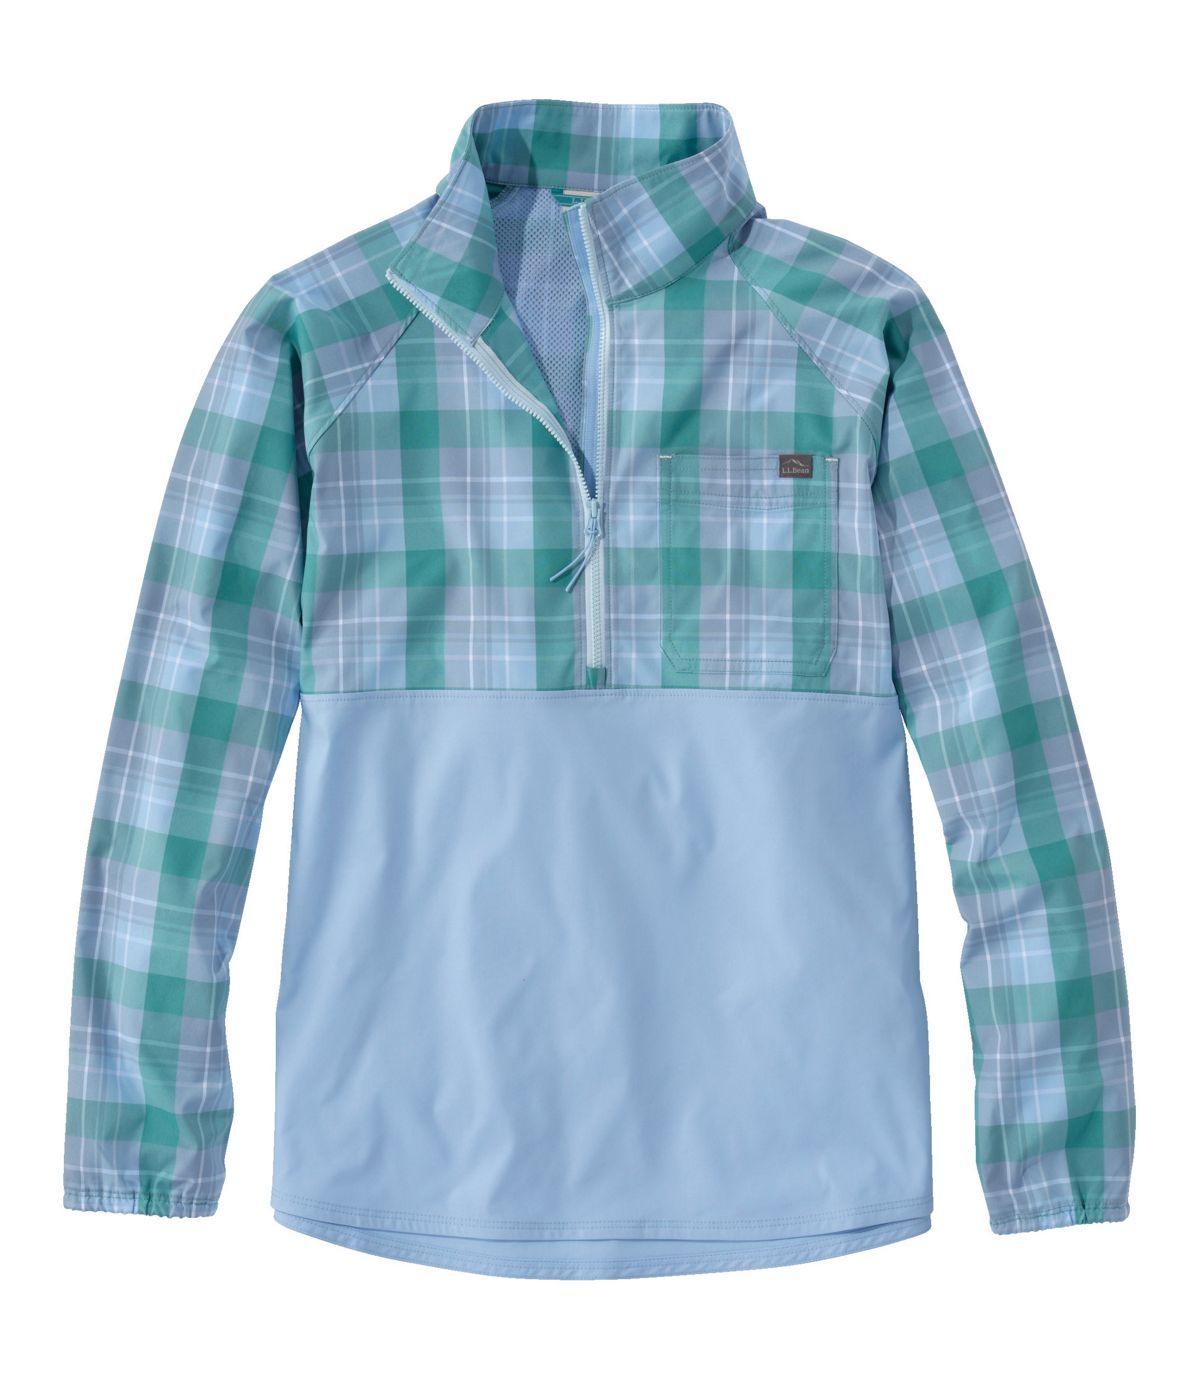 Women's Everyday SunSmart® Woven Shirt, Quarter-Zip Pullover Colorblock | L.L. Bean